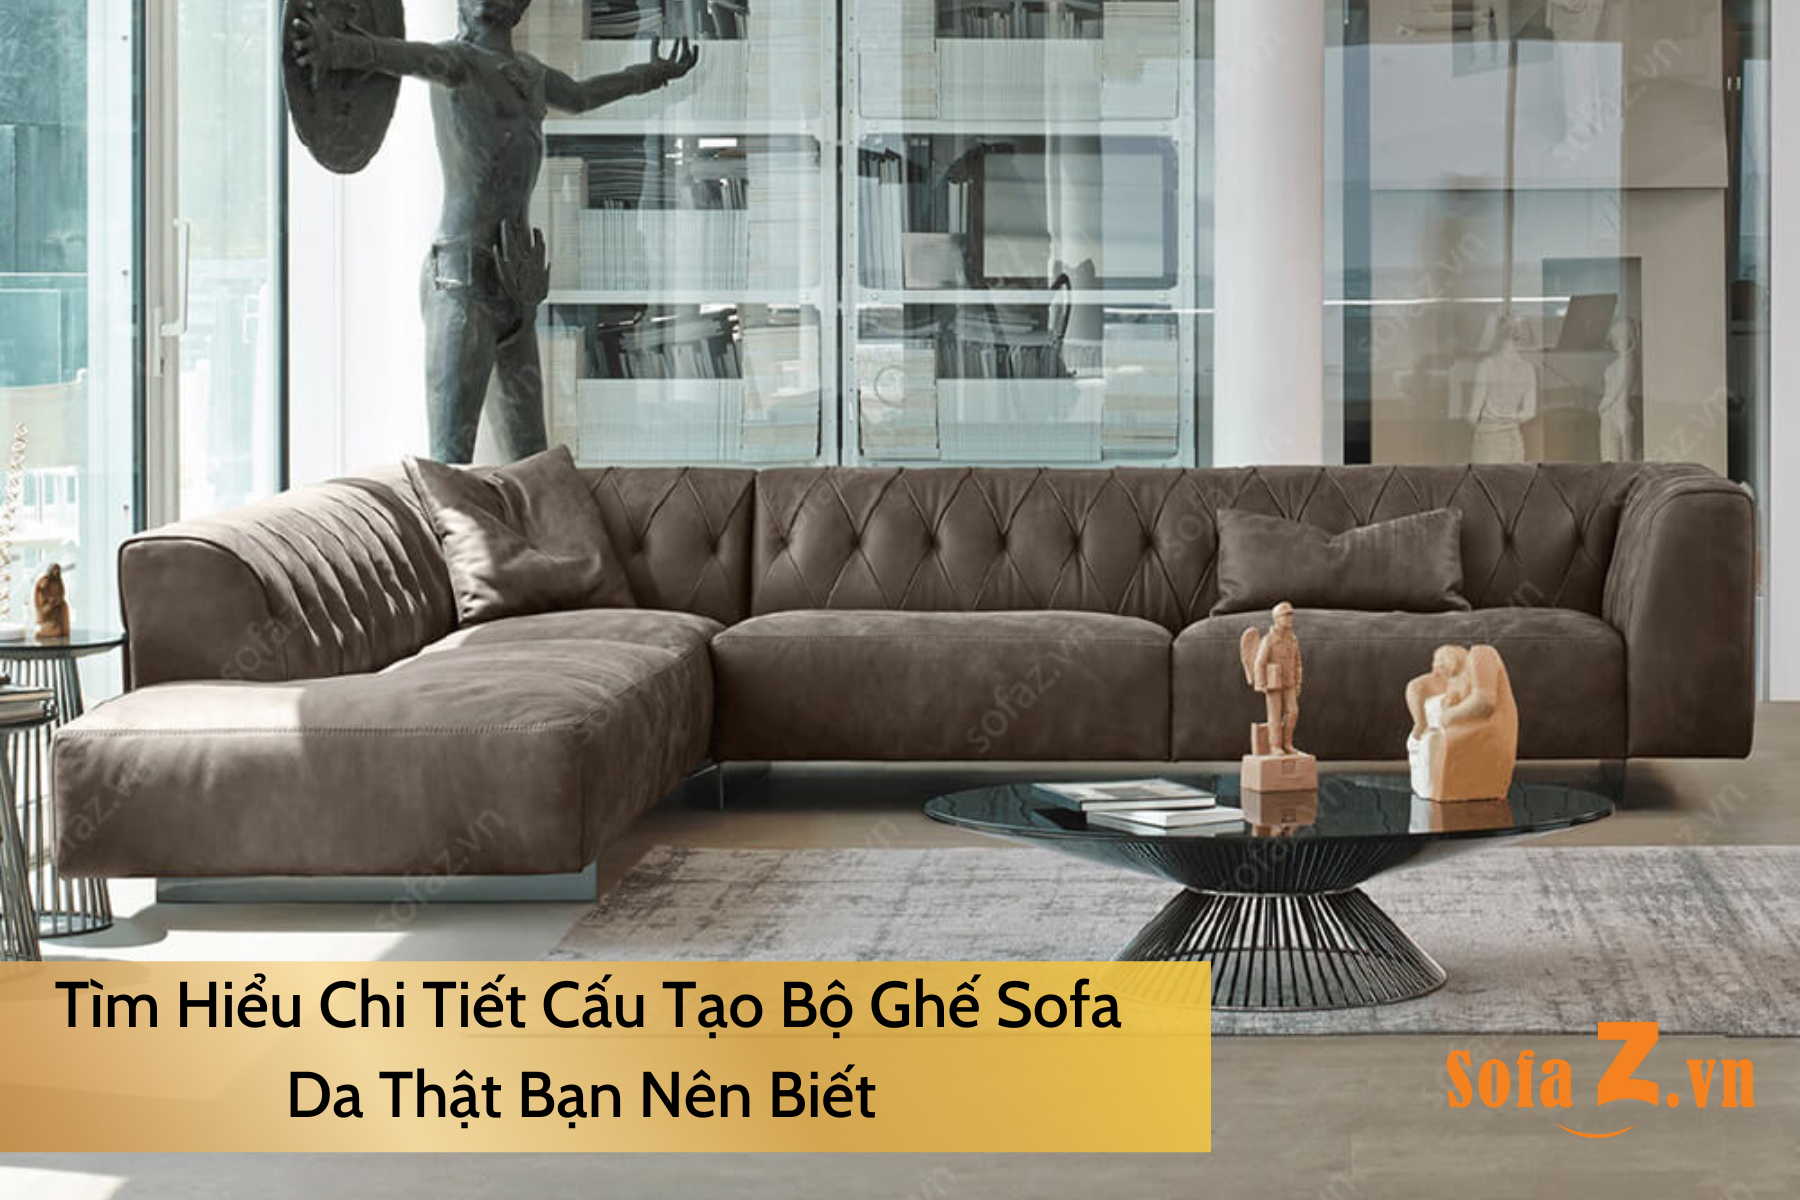 tim-hieu-chi-tiet-cau-tao-bo-ghe-sofa-da-that-ban-nen-biet.html